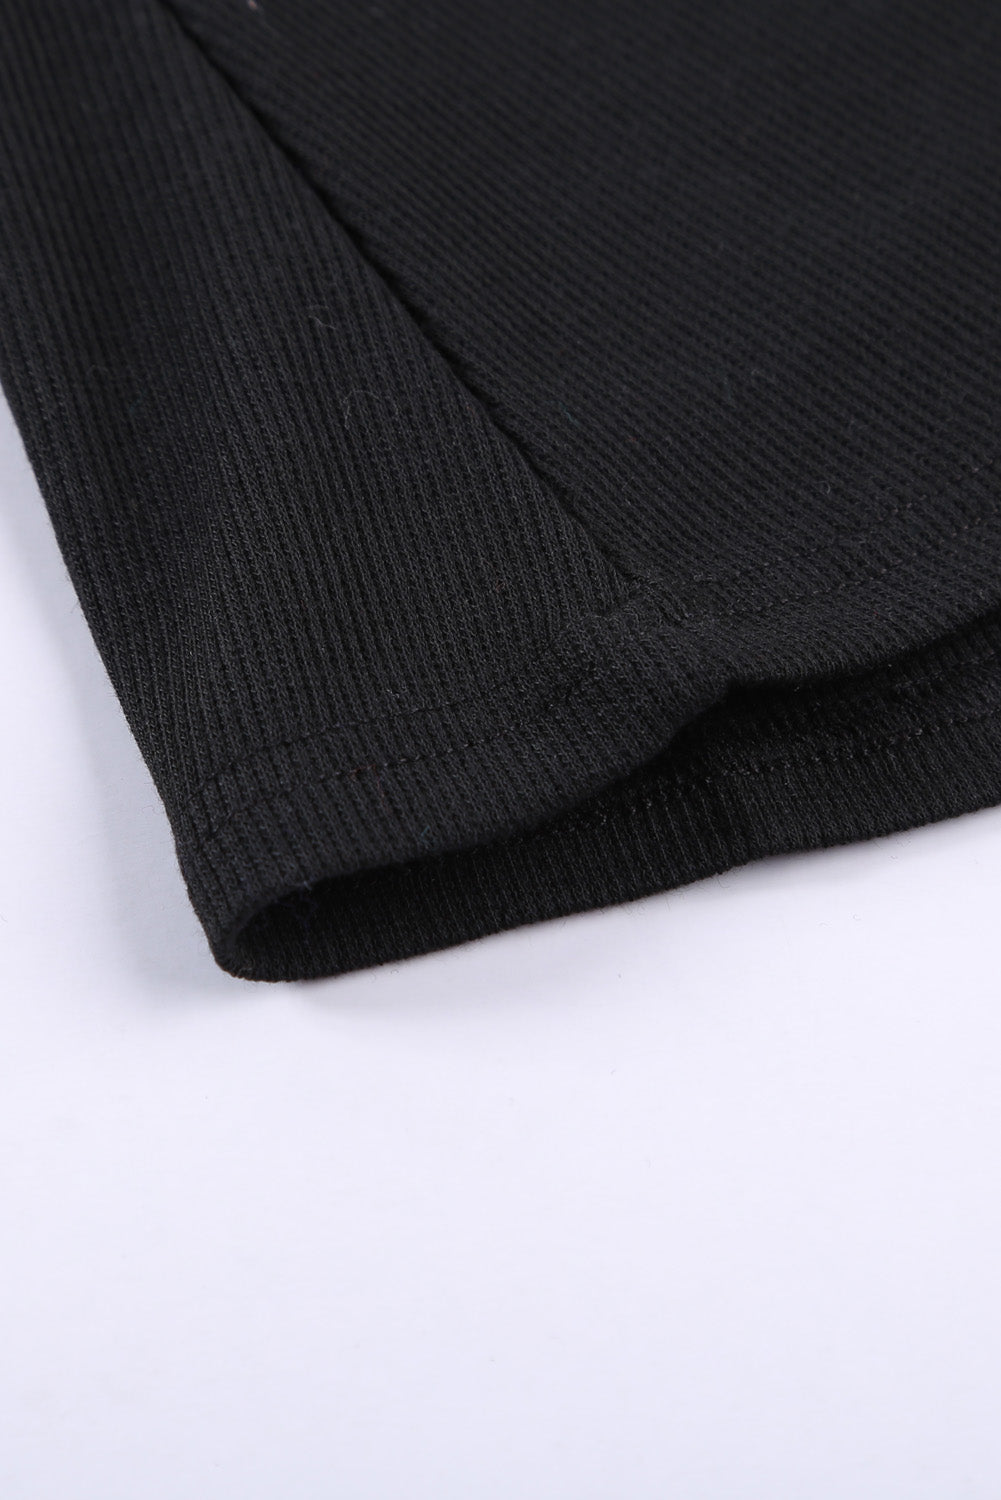 Črna majica brez rokavov z dolgim ​​izrezom in gumbi